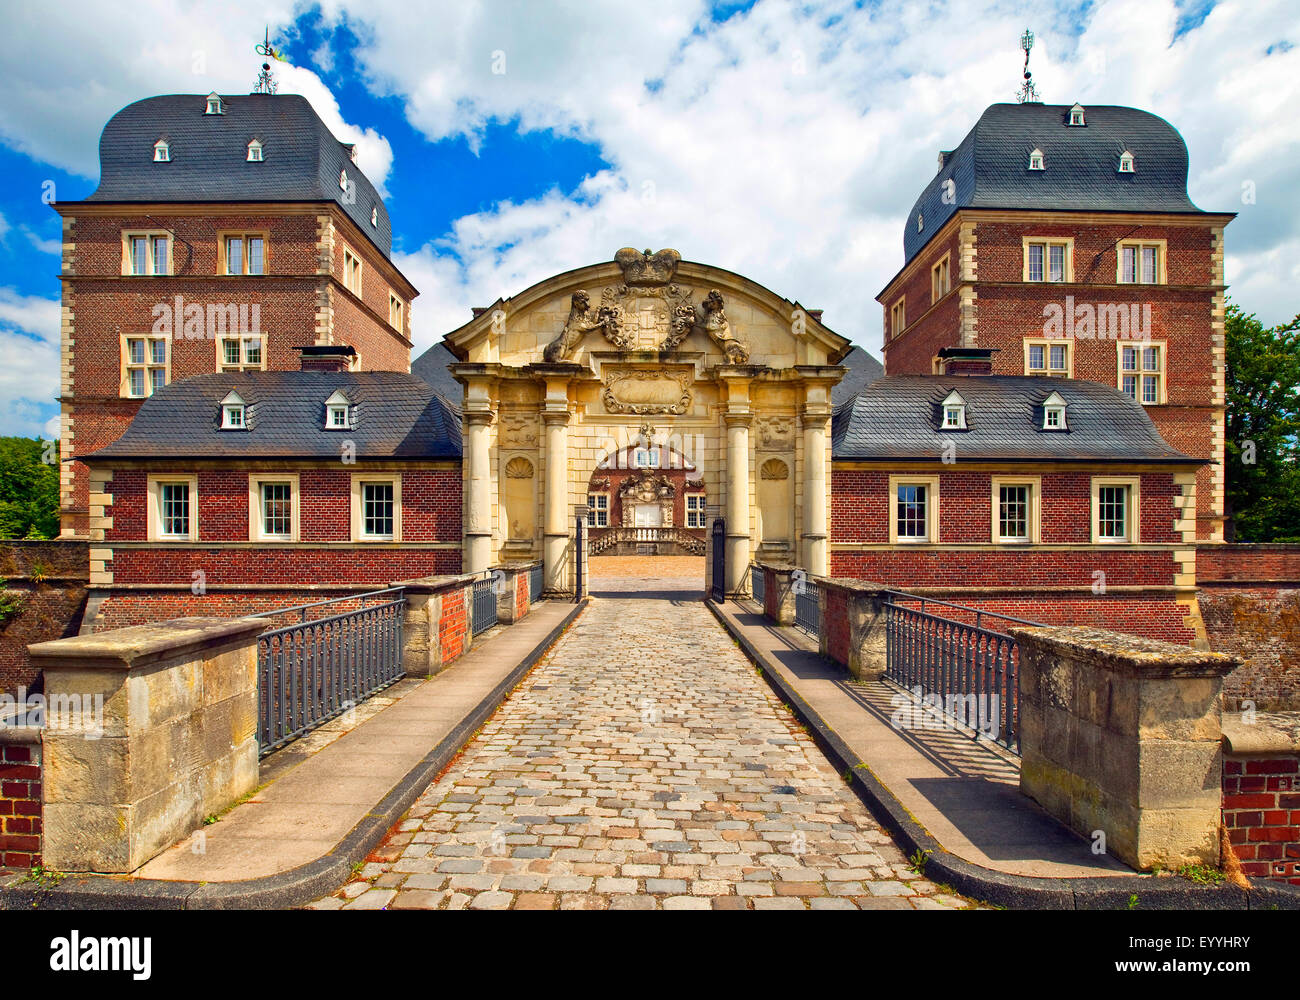 barocke Wasserschloss Ahaus, technische Akademy, Vorderansicht, Ahaus, Münsterland, Nordrhein-Westfalen, Deutschland Stockfoto